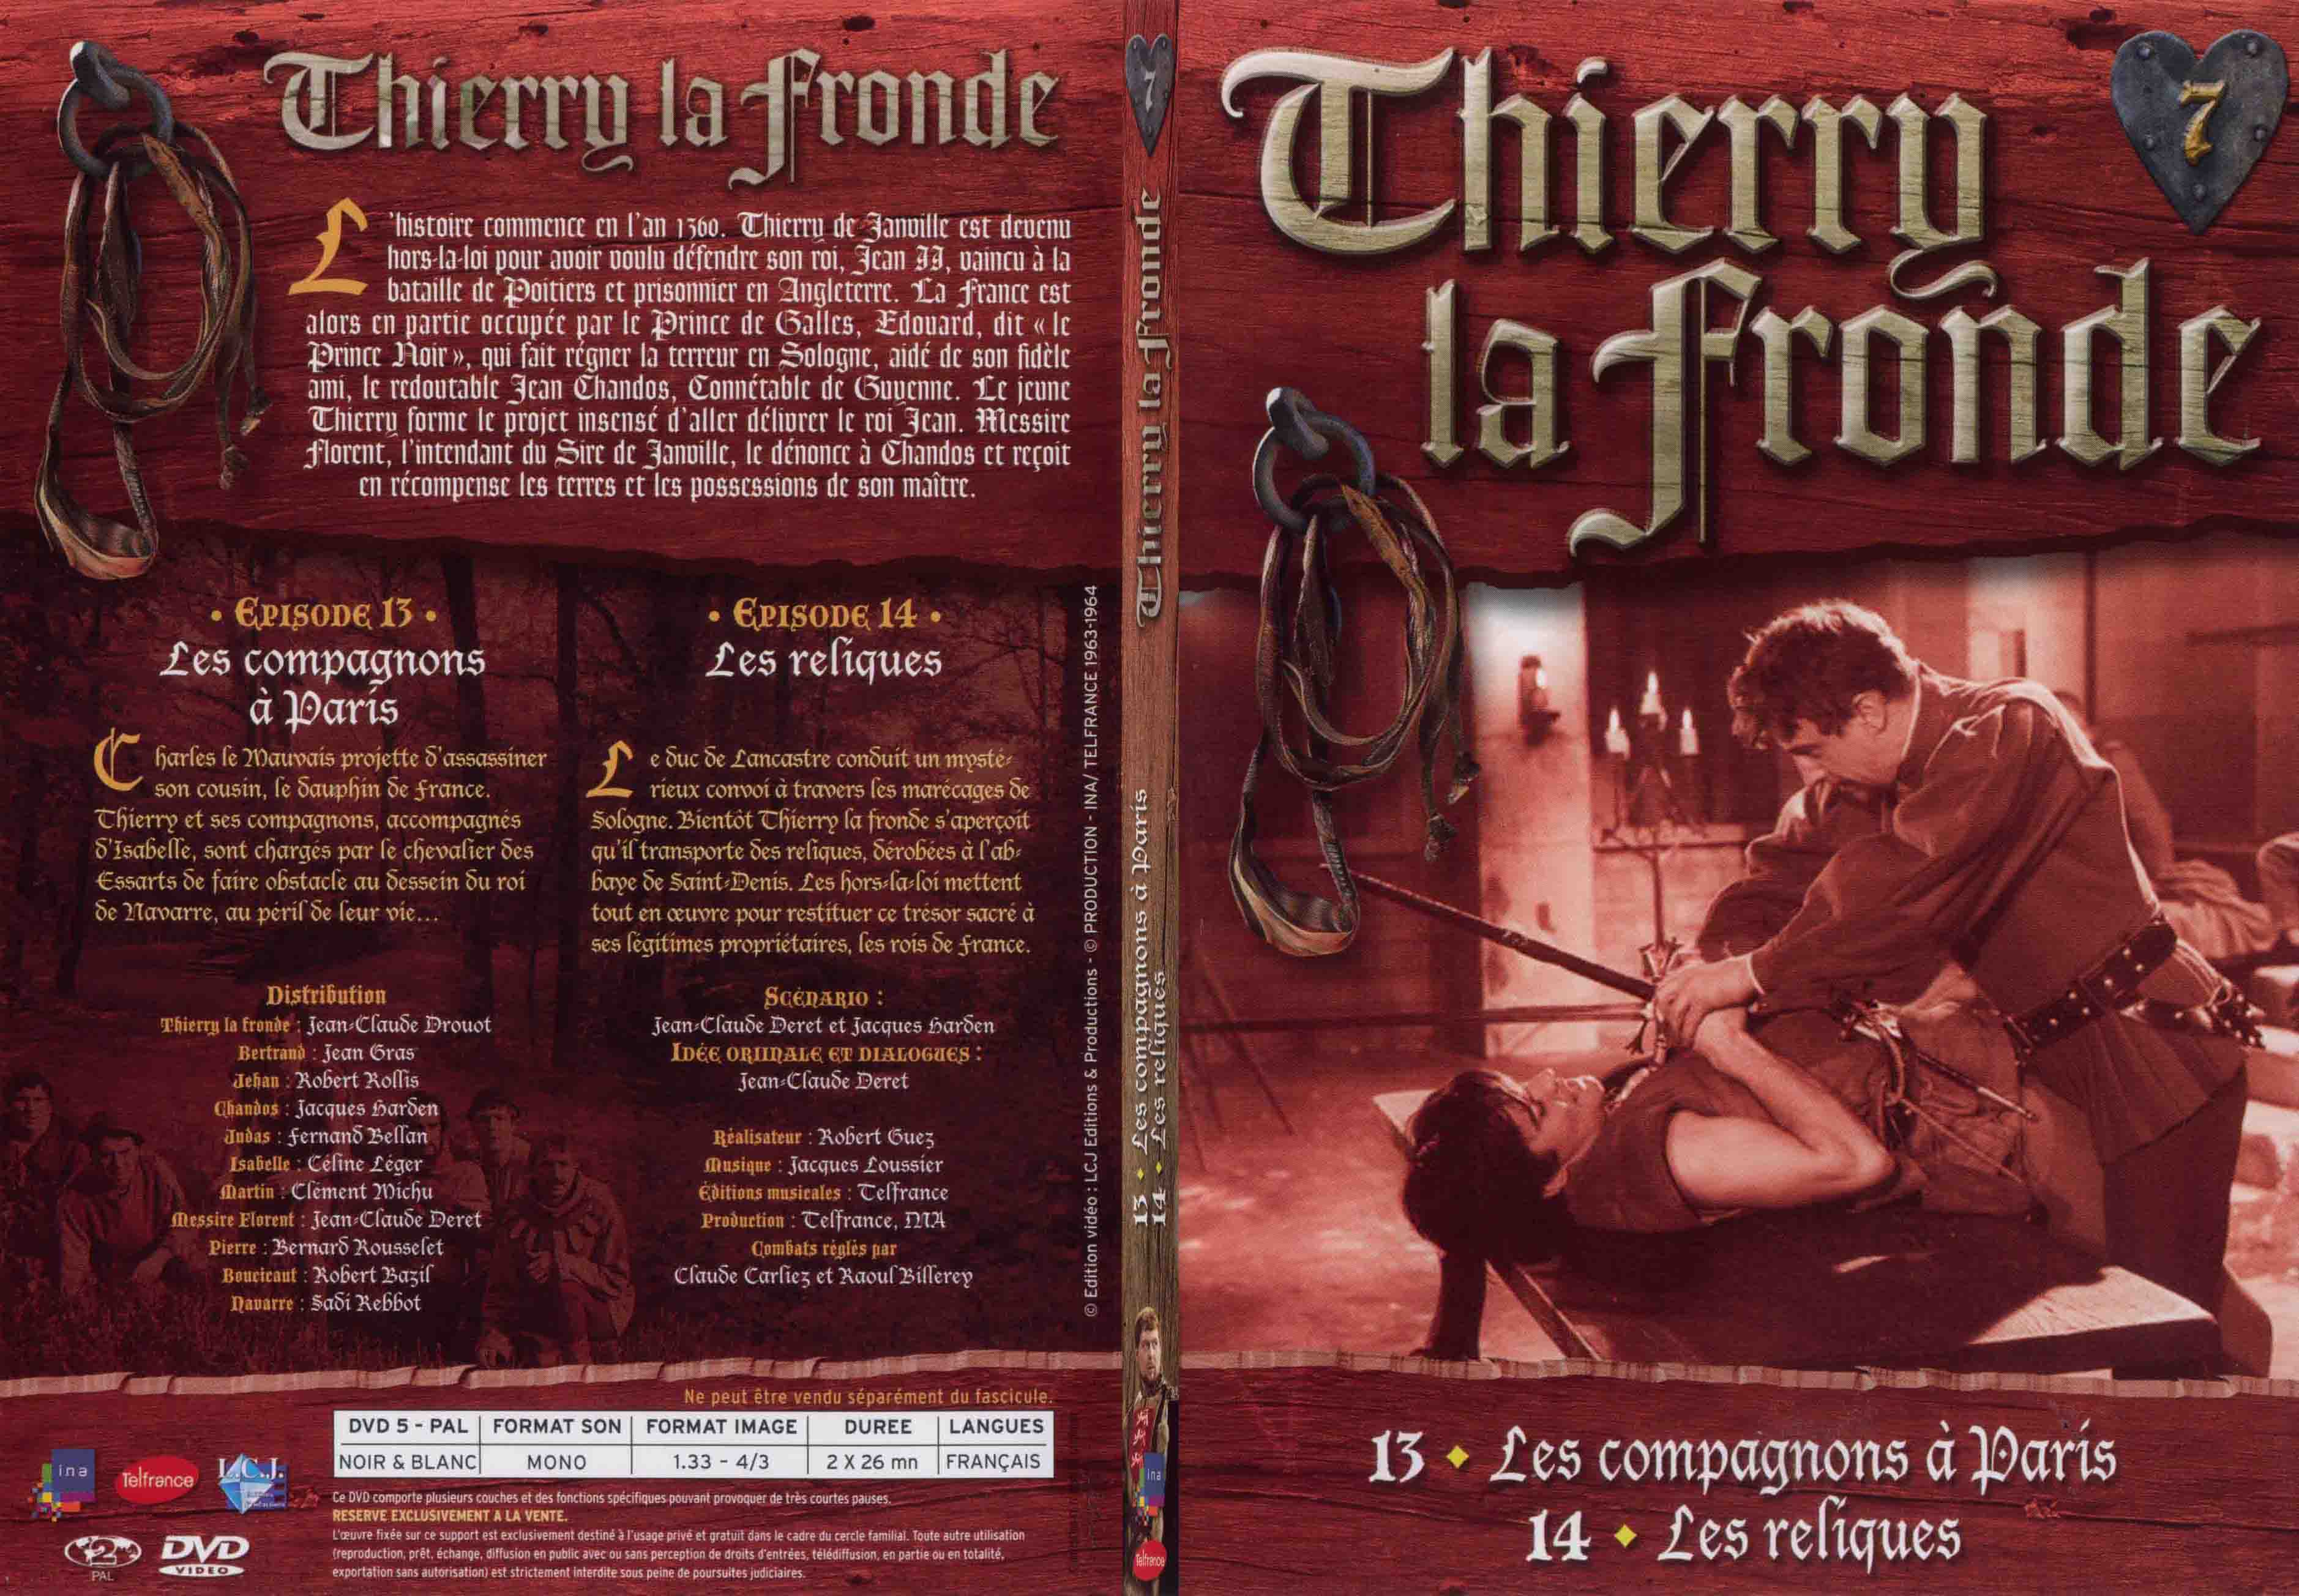 Jaquette DVD Thierry la Fronde vol 07 - SLIM